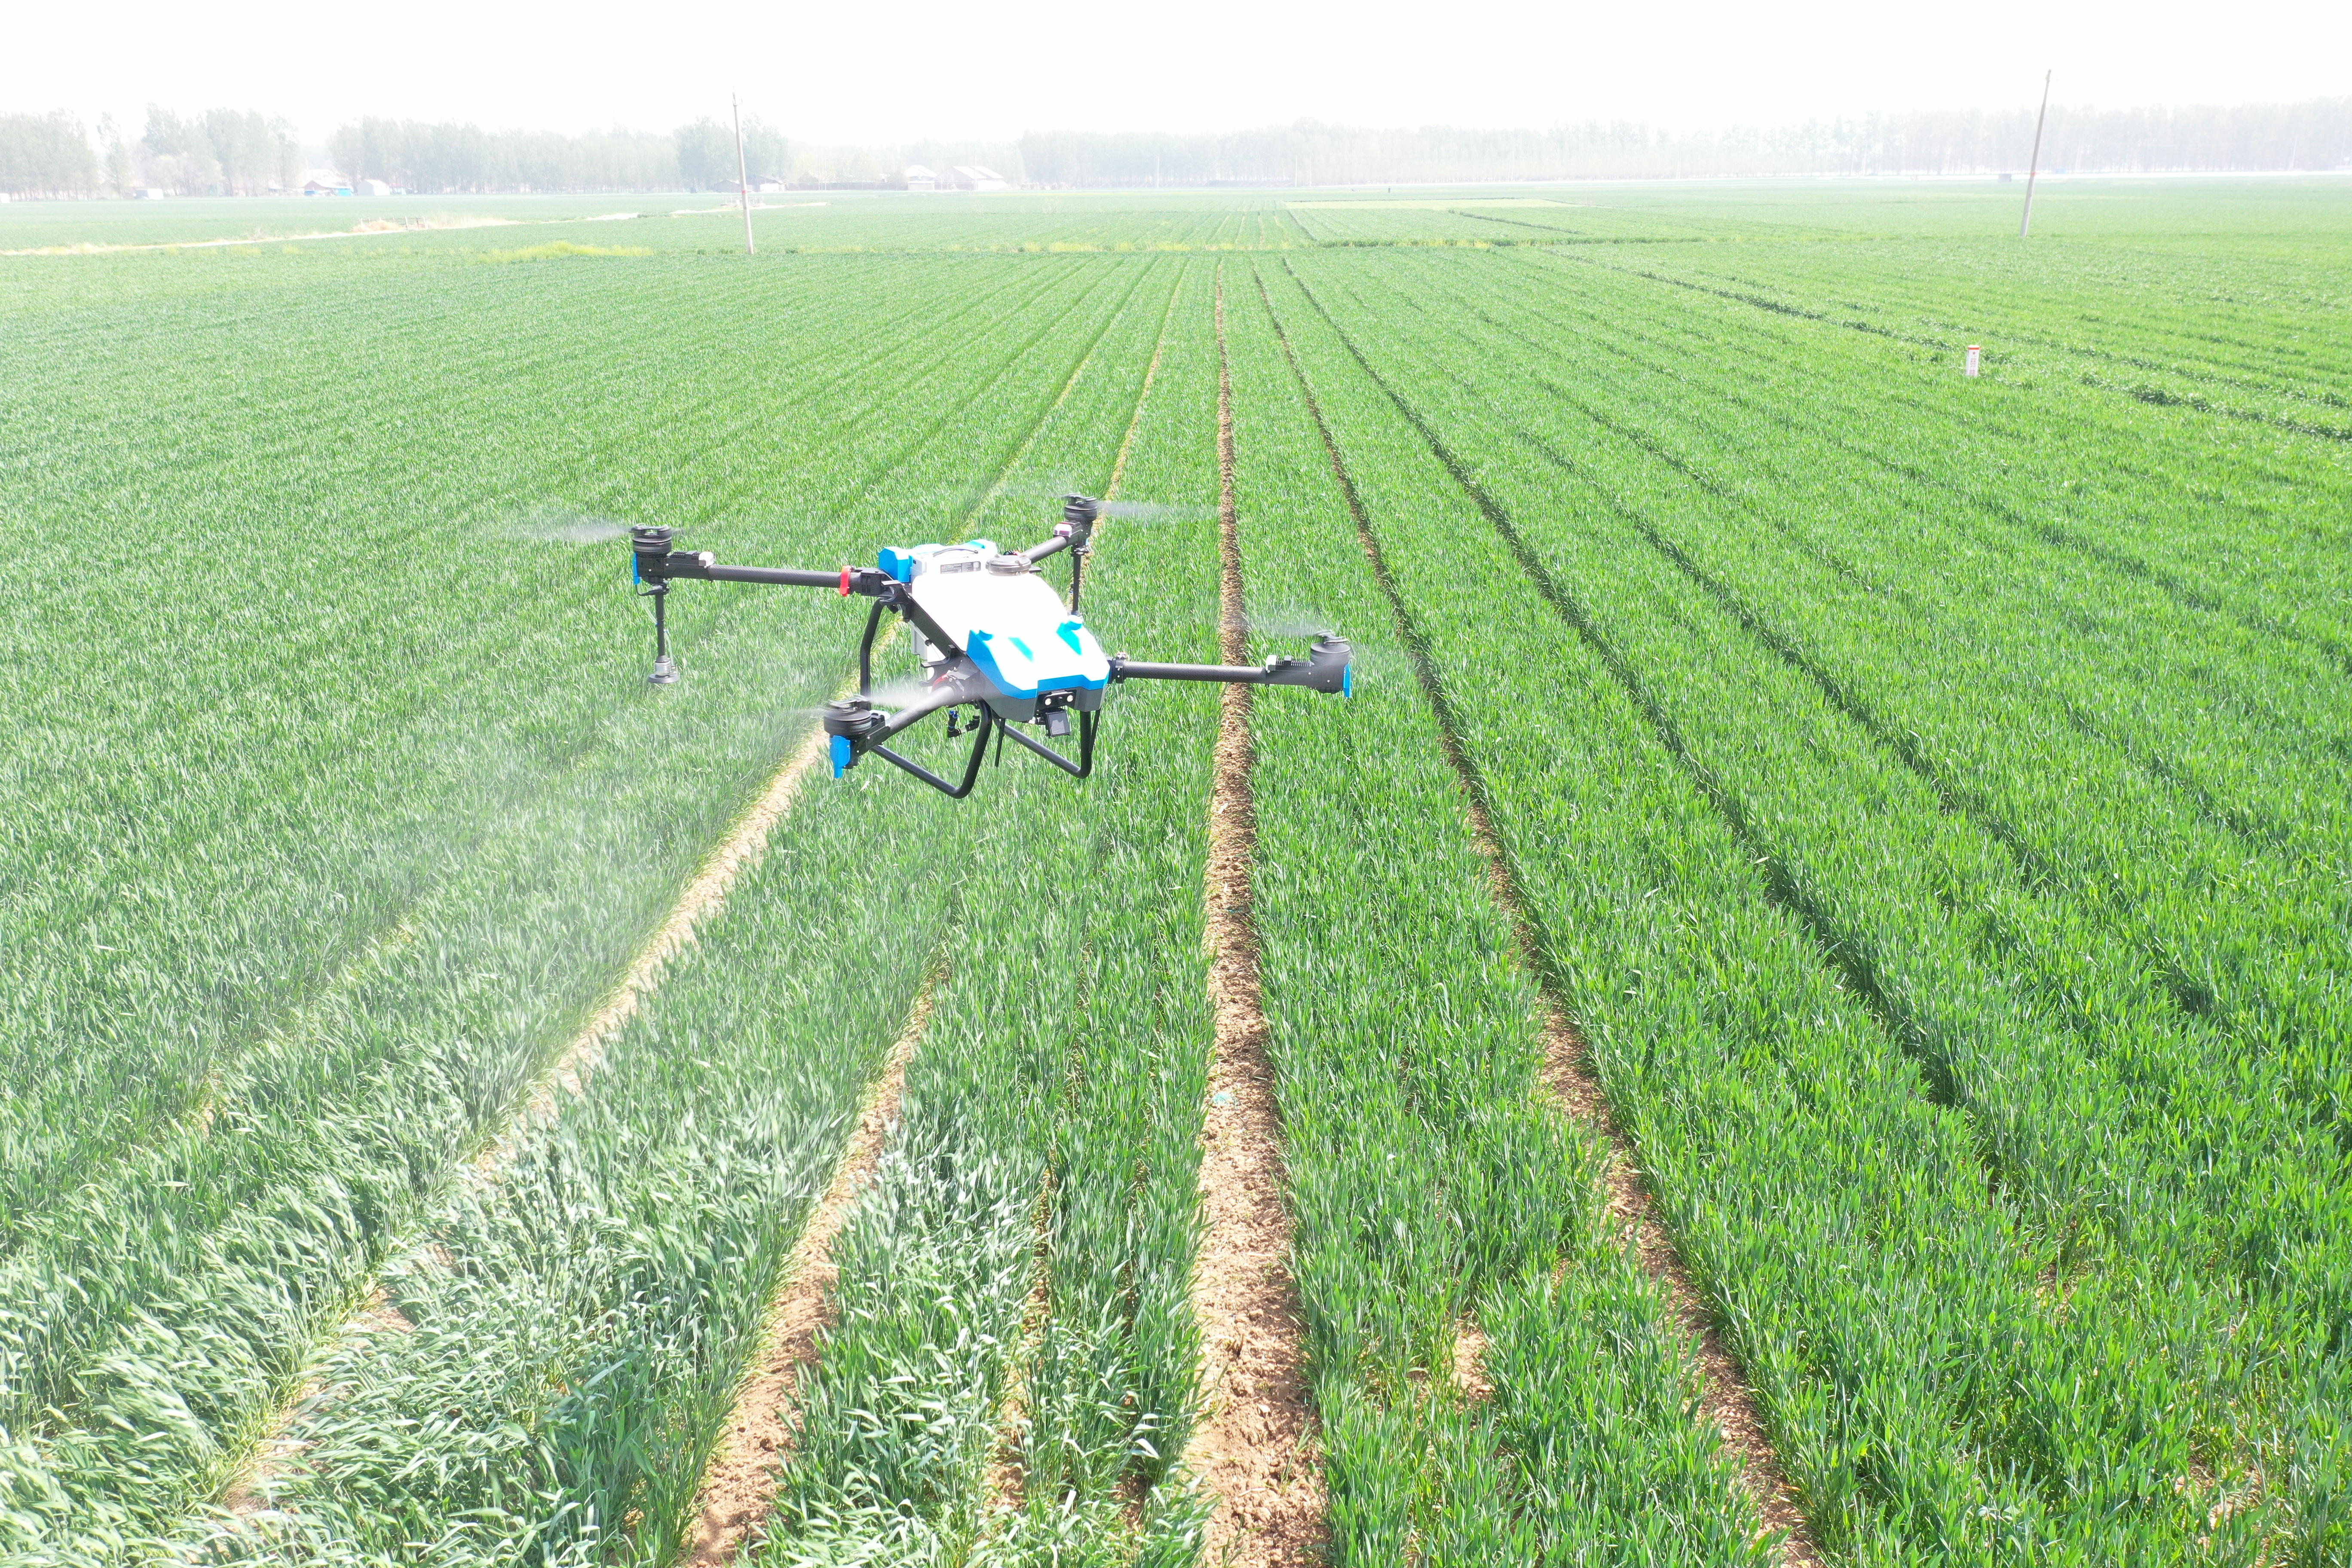 هواپیماهای بدون سرنشین حفاظت از گیاهان انگیزه جدیدی برای توسعه کشاورزی به وجود می آورند